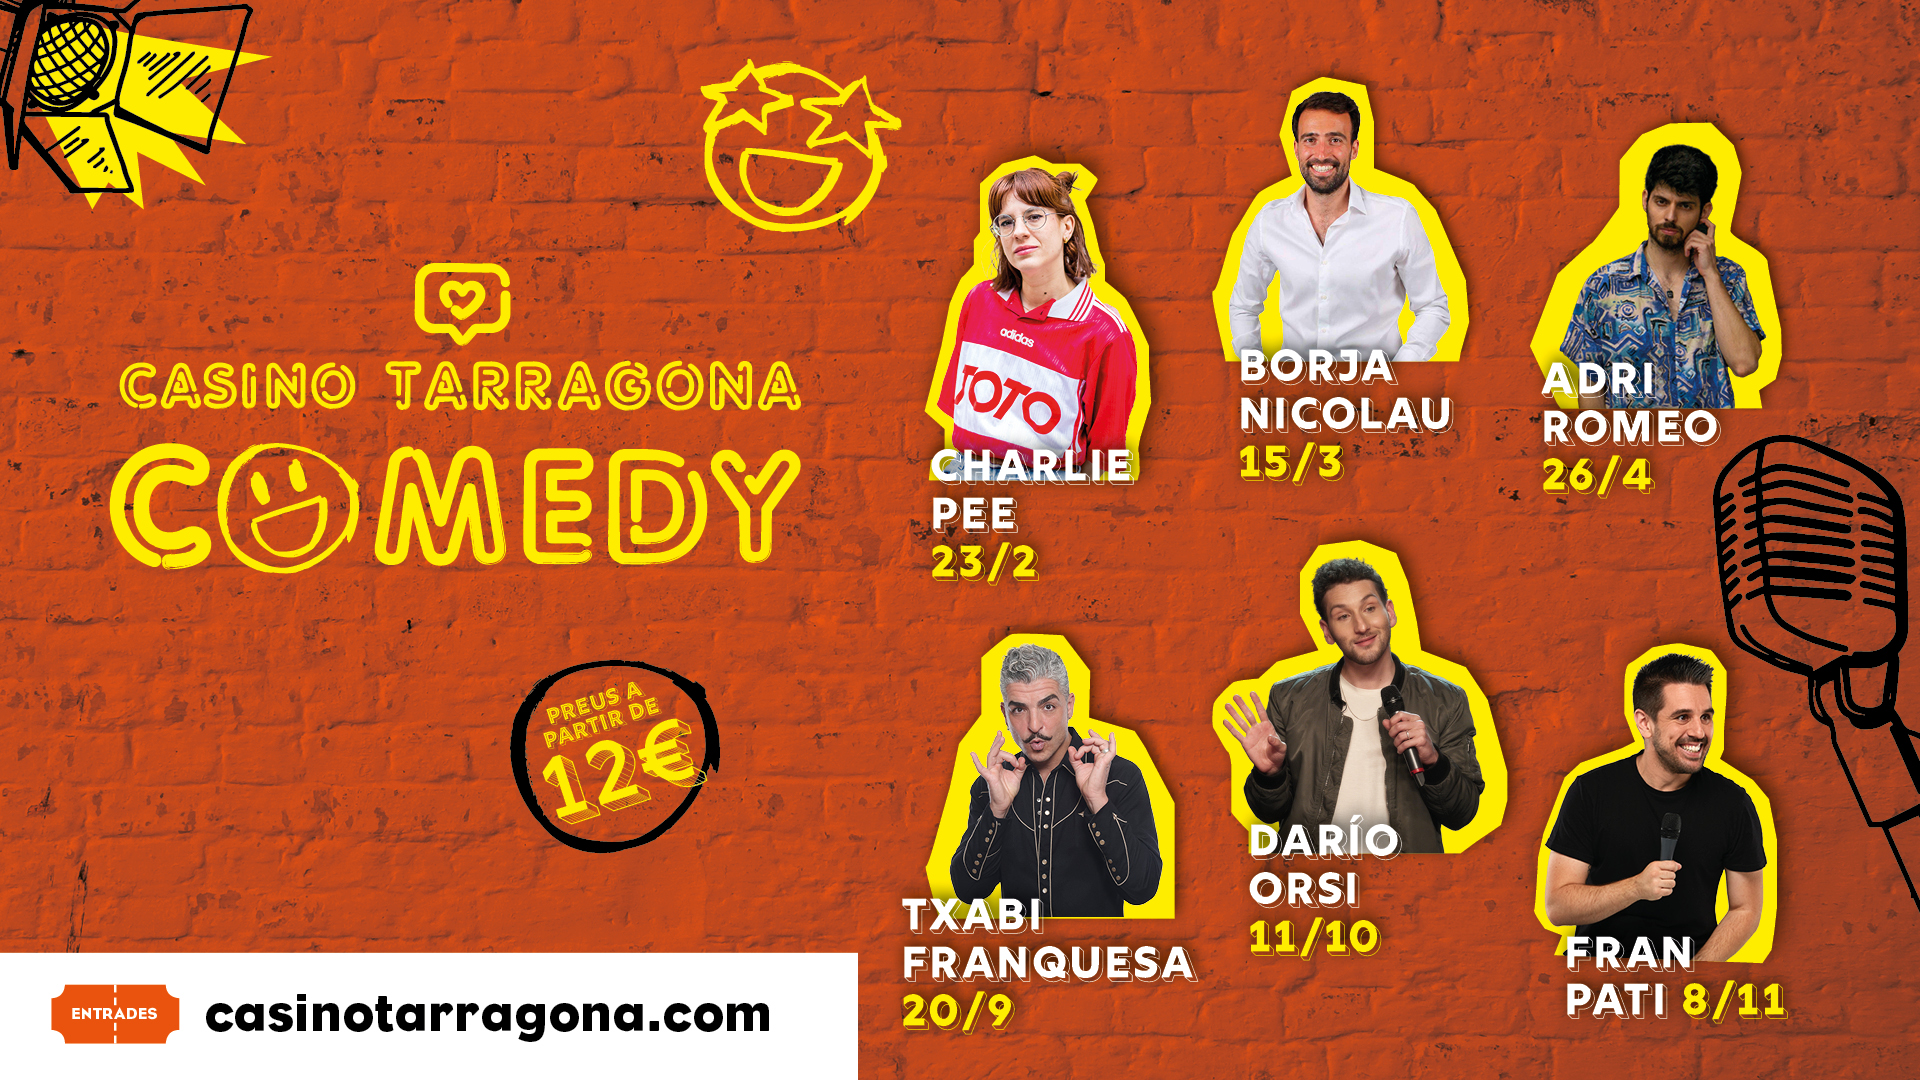 Charlie Pee, Borja Nicolau i Adri Romeo són els protagonistes de la primera etapa del cicle de monòlegs Casino Tarragona Comedy